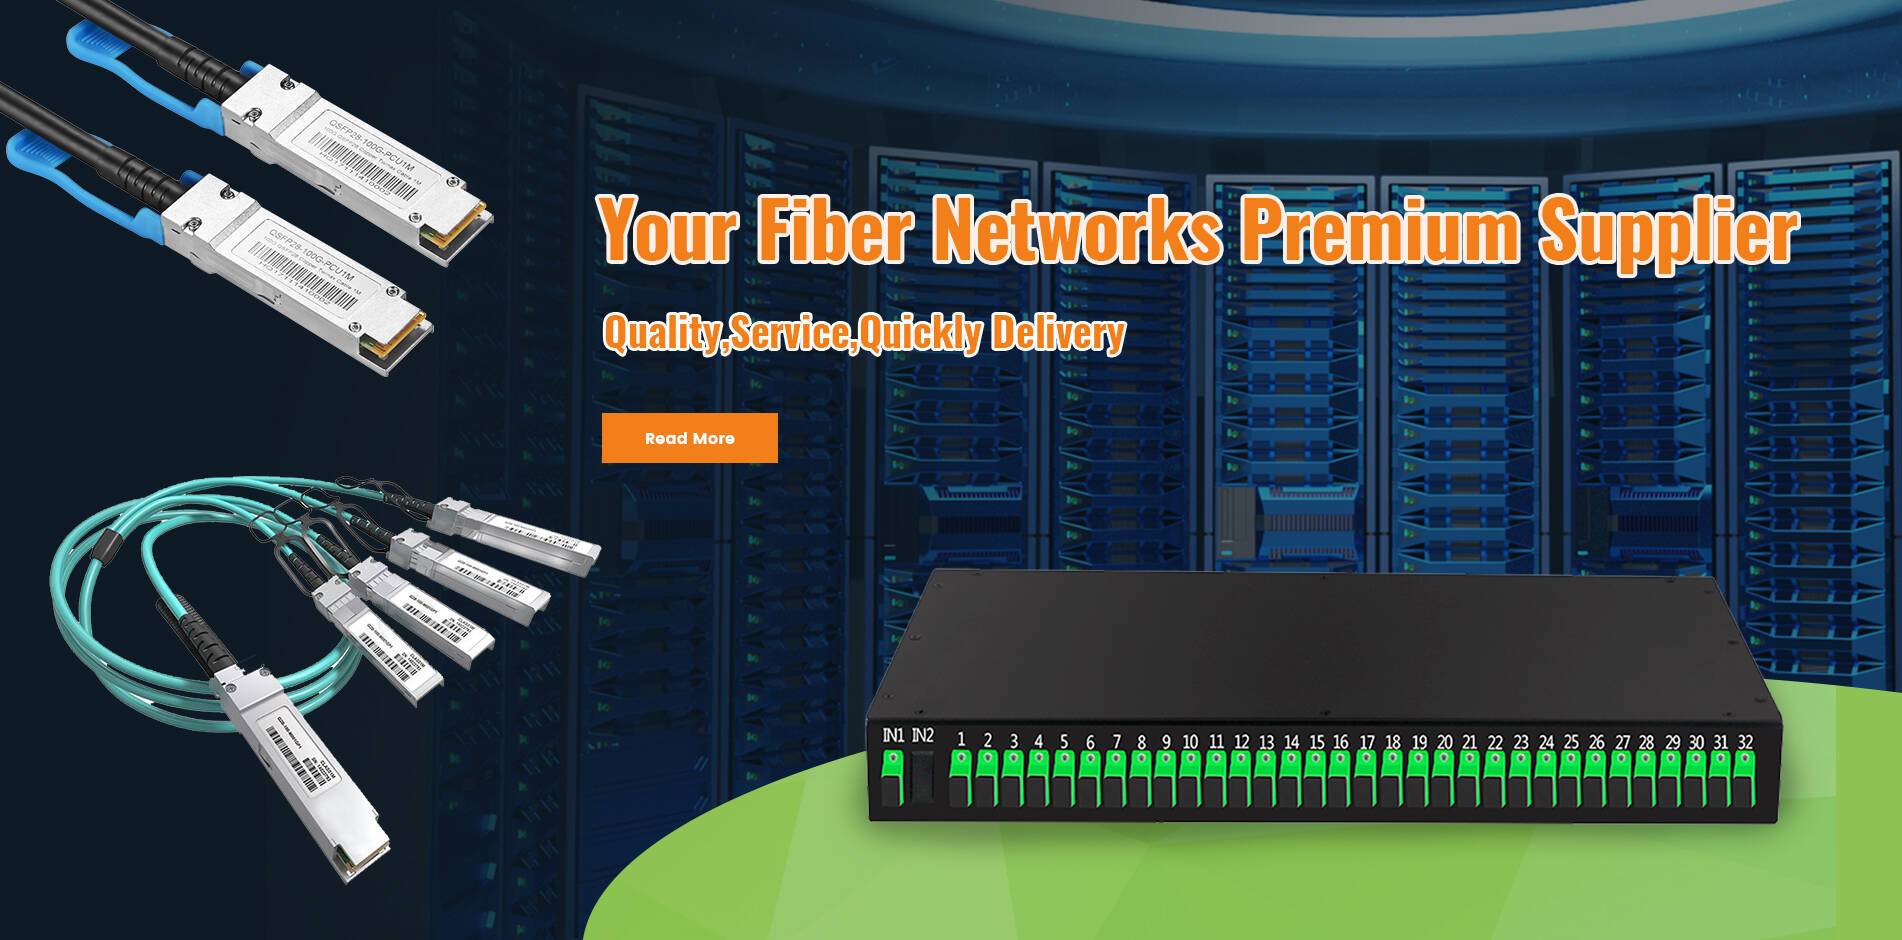 Fiber networks products manufacturer